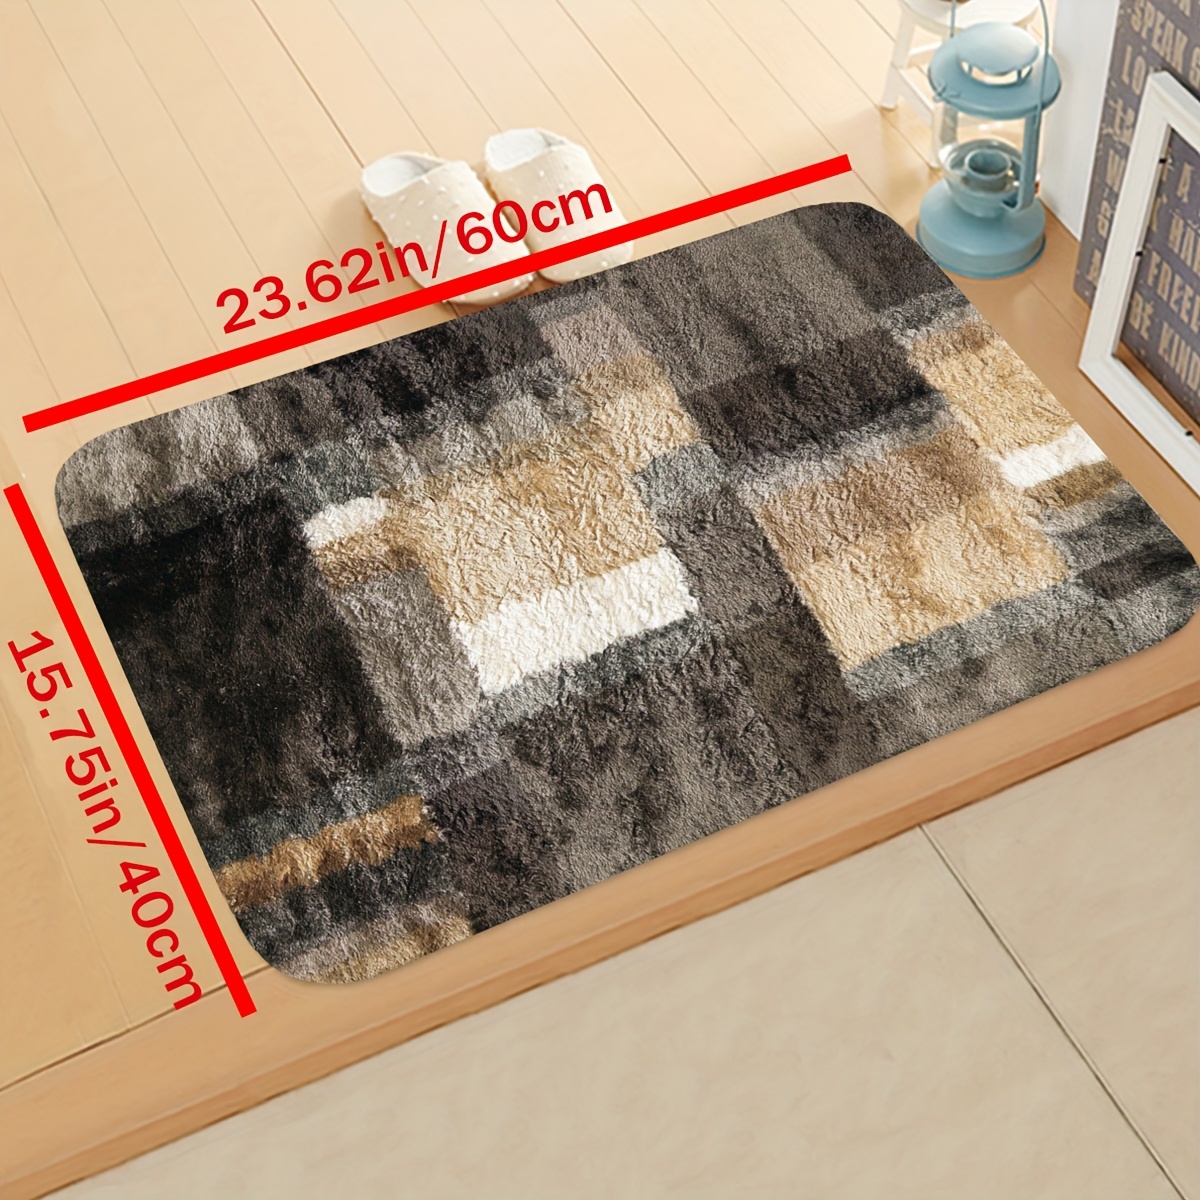 Kitchen Mat Coffee Kitchen Rug Doormat Anti Slip Home Living Room Bedr